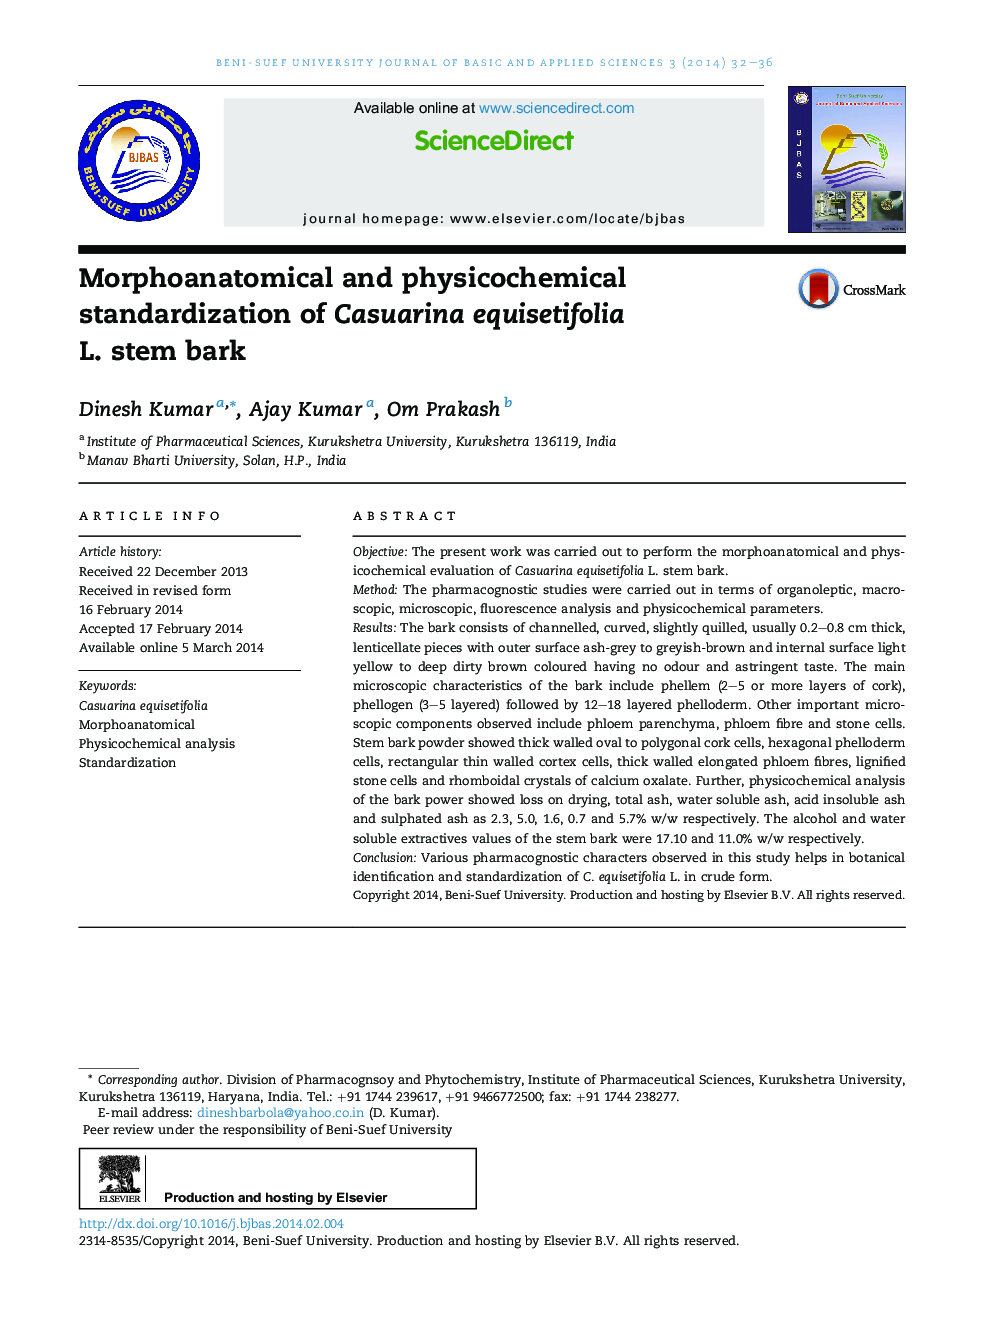 Morphoanatomical and physicochemical standardization of Casuarina equisetifolia L. stem bark 